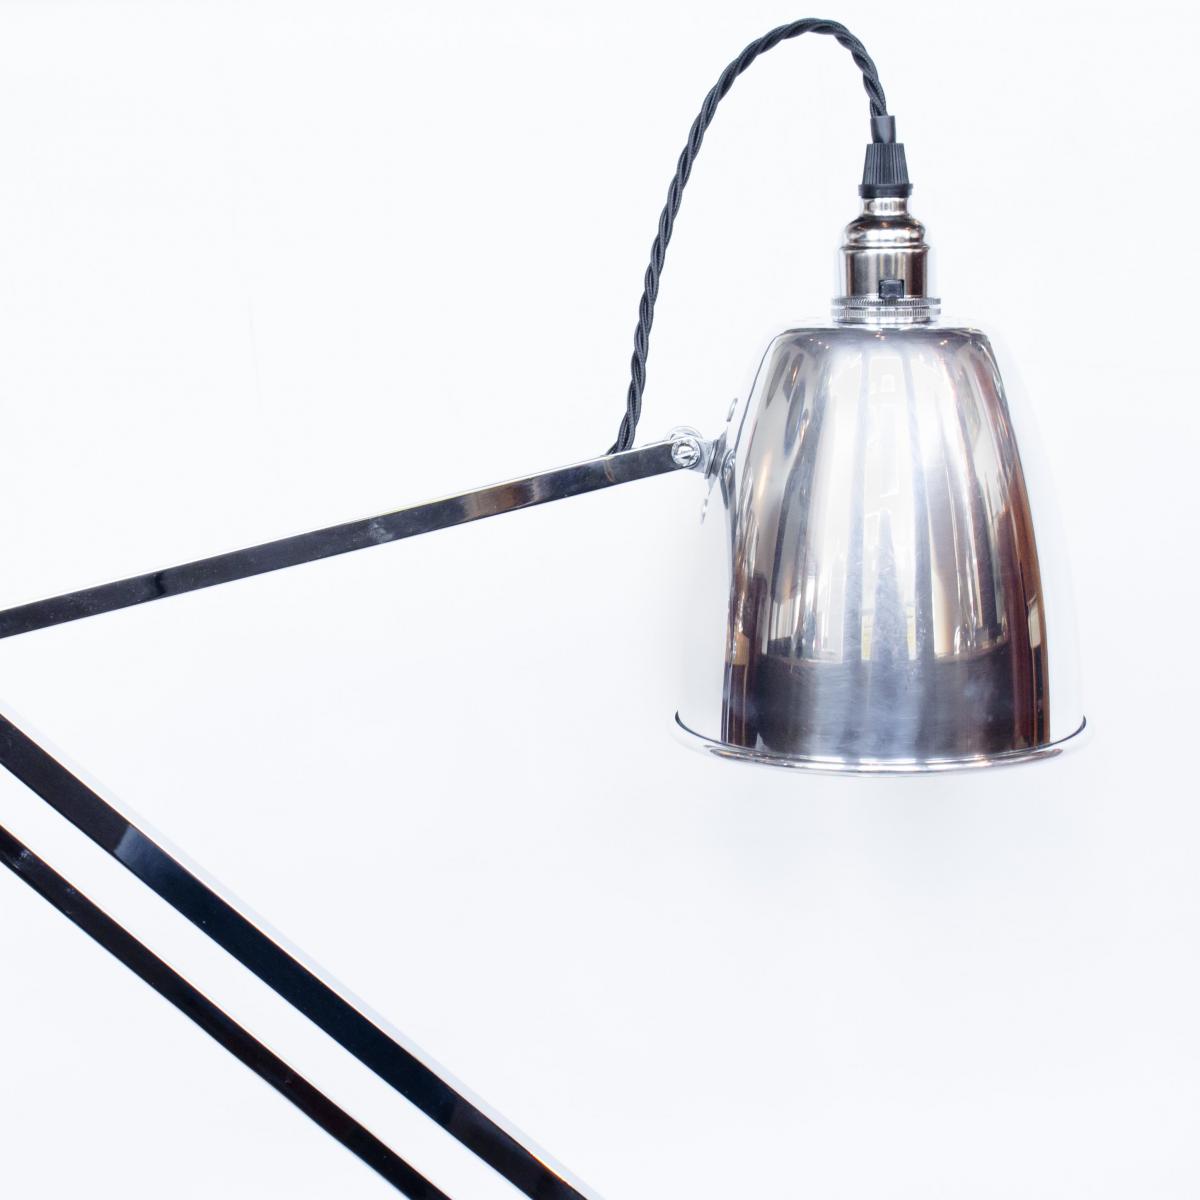 Hadrill & Horstmann, Counterpoise Desk Lamp